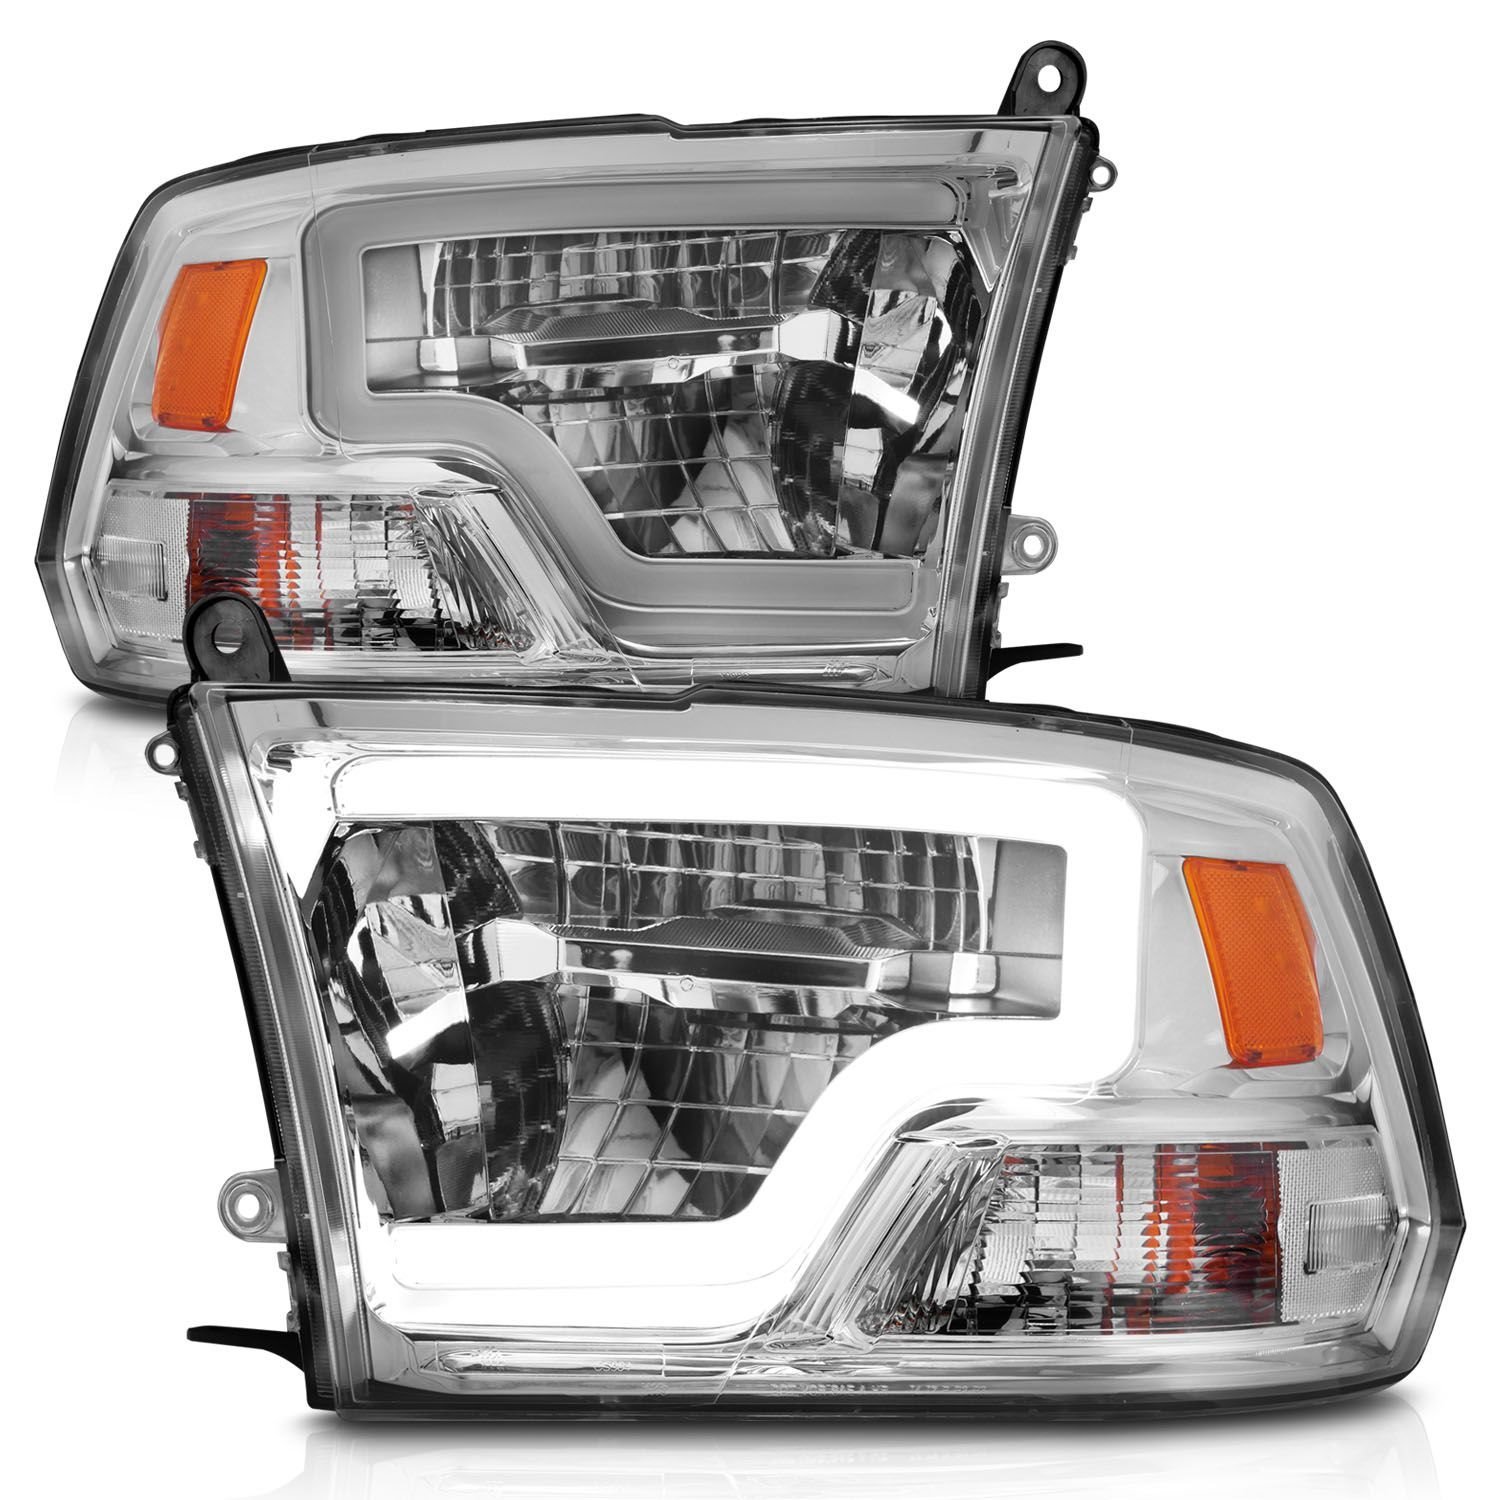 LED Chrome Housing Headlights for Select 2009-2020 Ram 1500/2500/3500 Trucks [Light Bar]